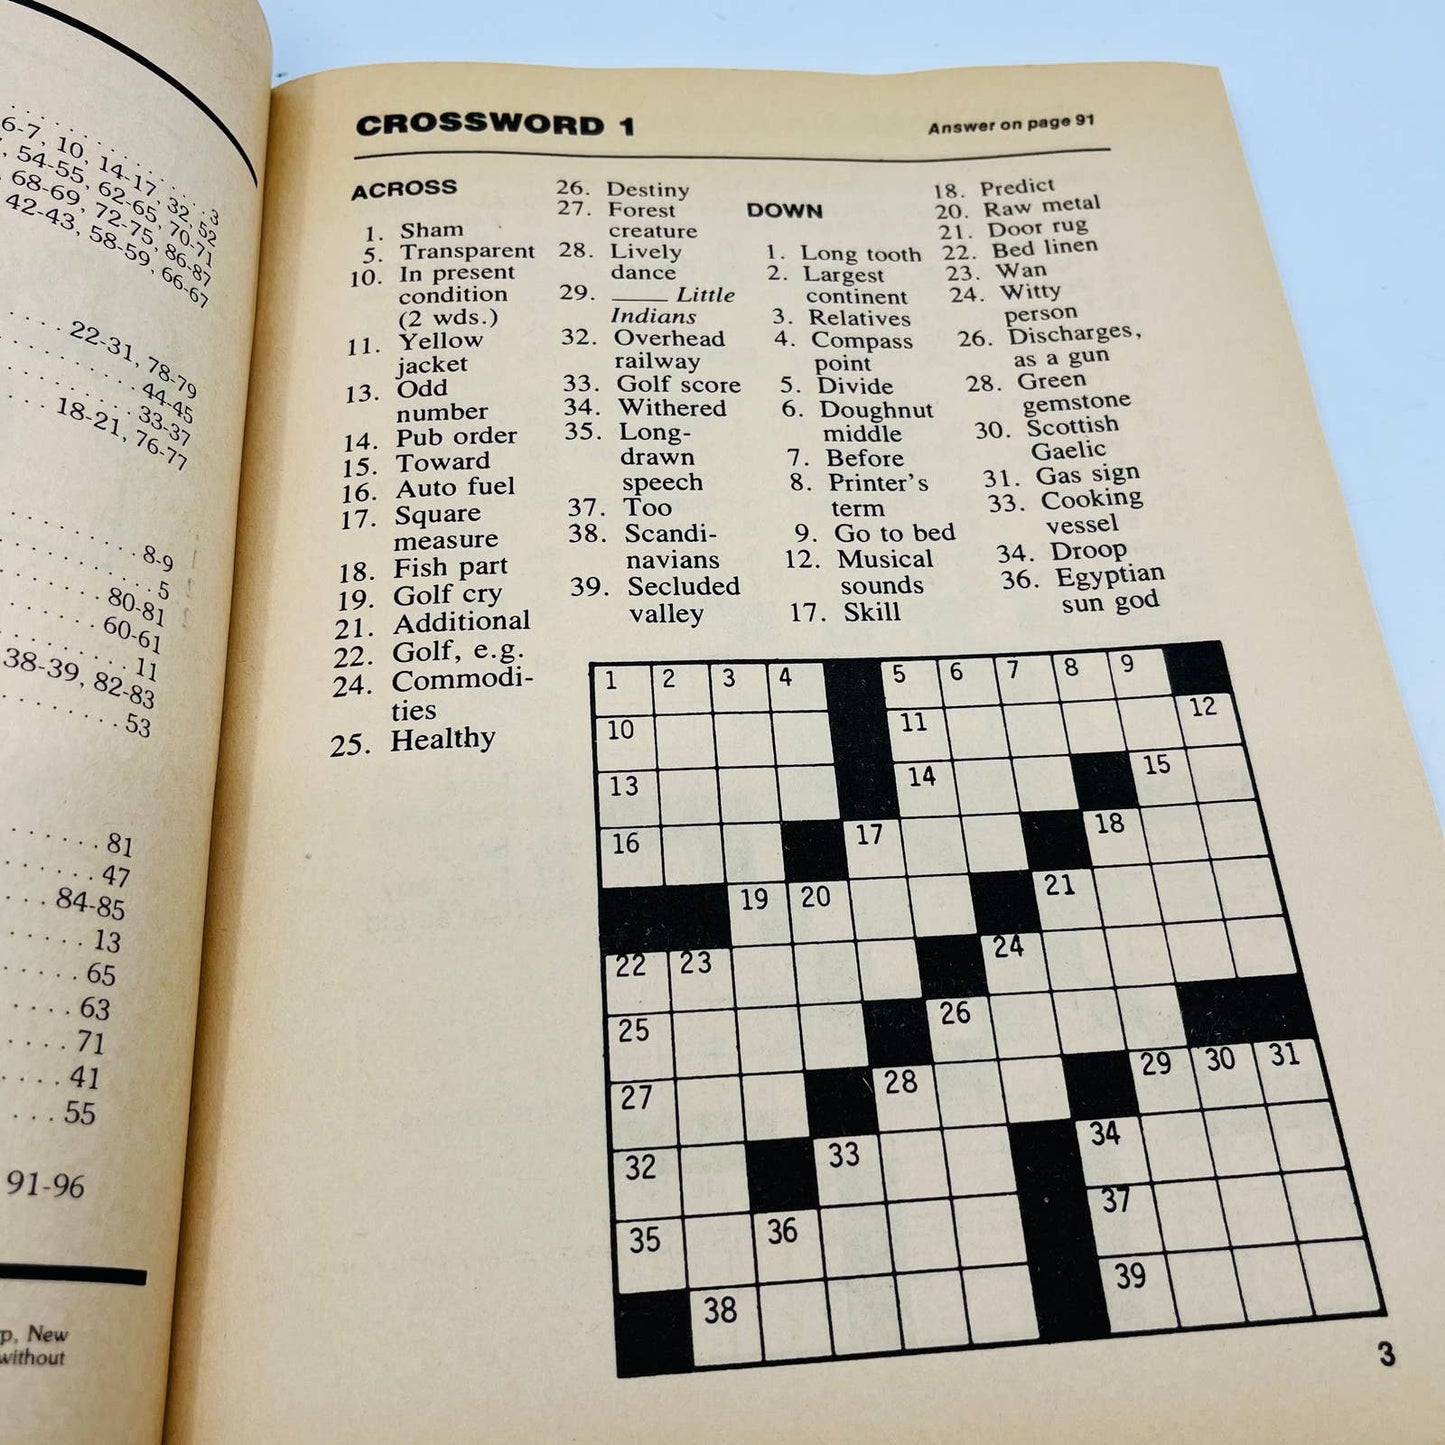 1981 NOS Finest Crossword Puzzles Book No. 6 UNUSED BA4